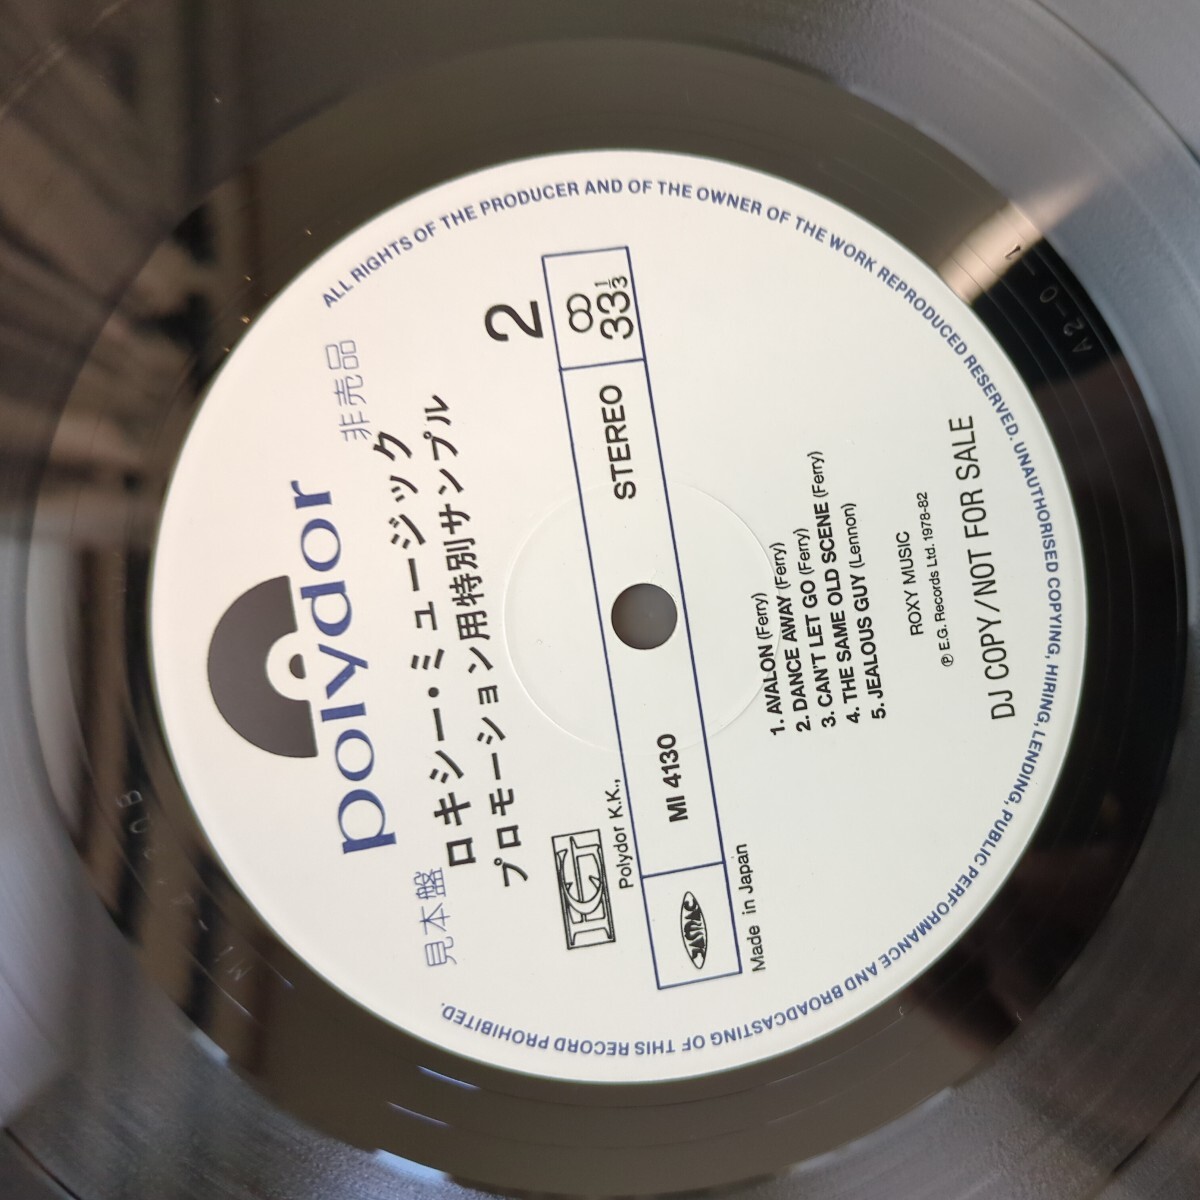 PROMO sample 見本盤 roxy music ロキシー・ミュージック promo sheet record レコード LP アナログ vinyl_画像5